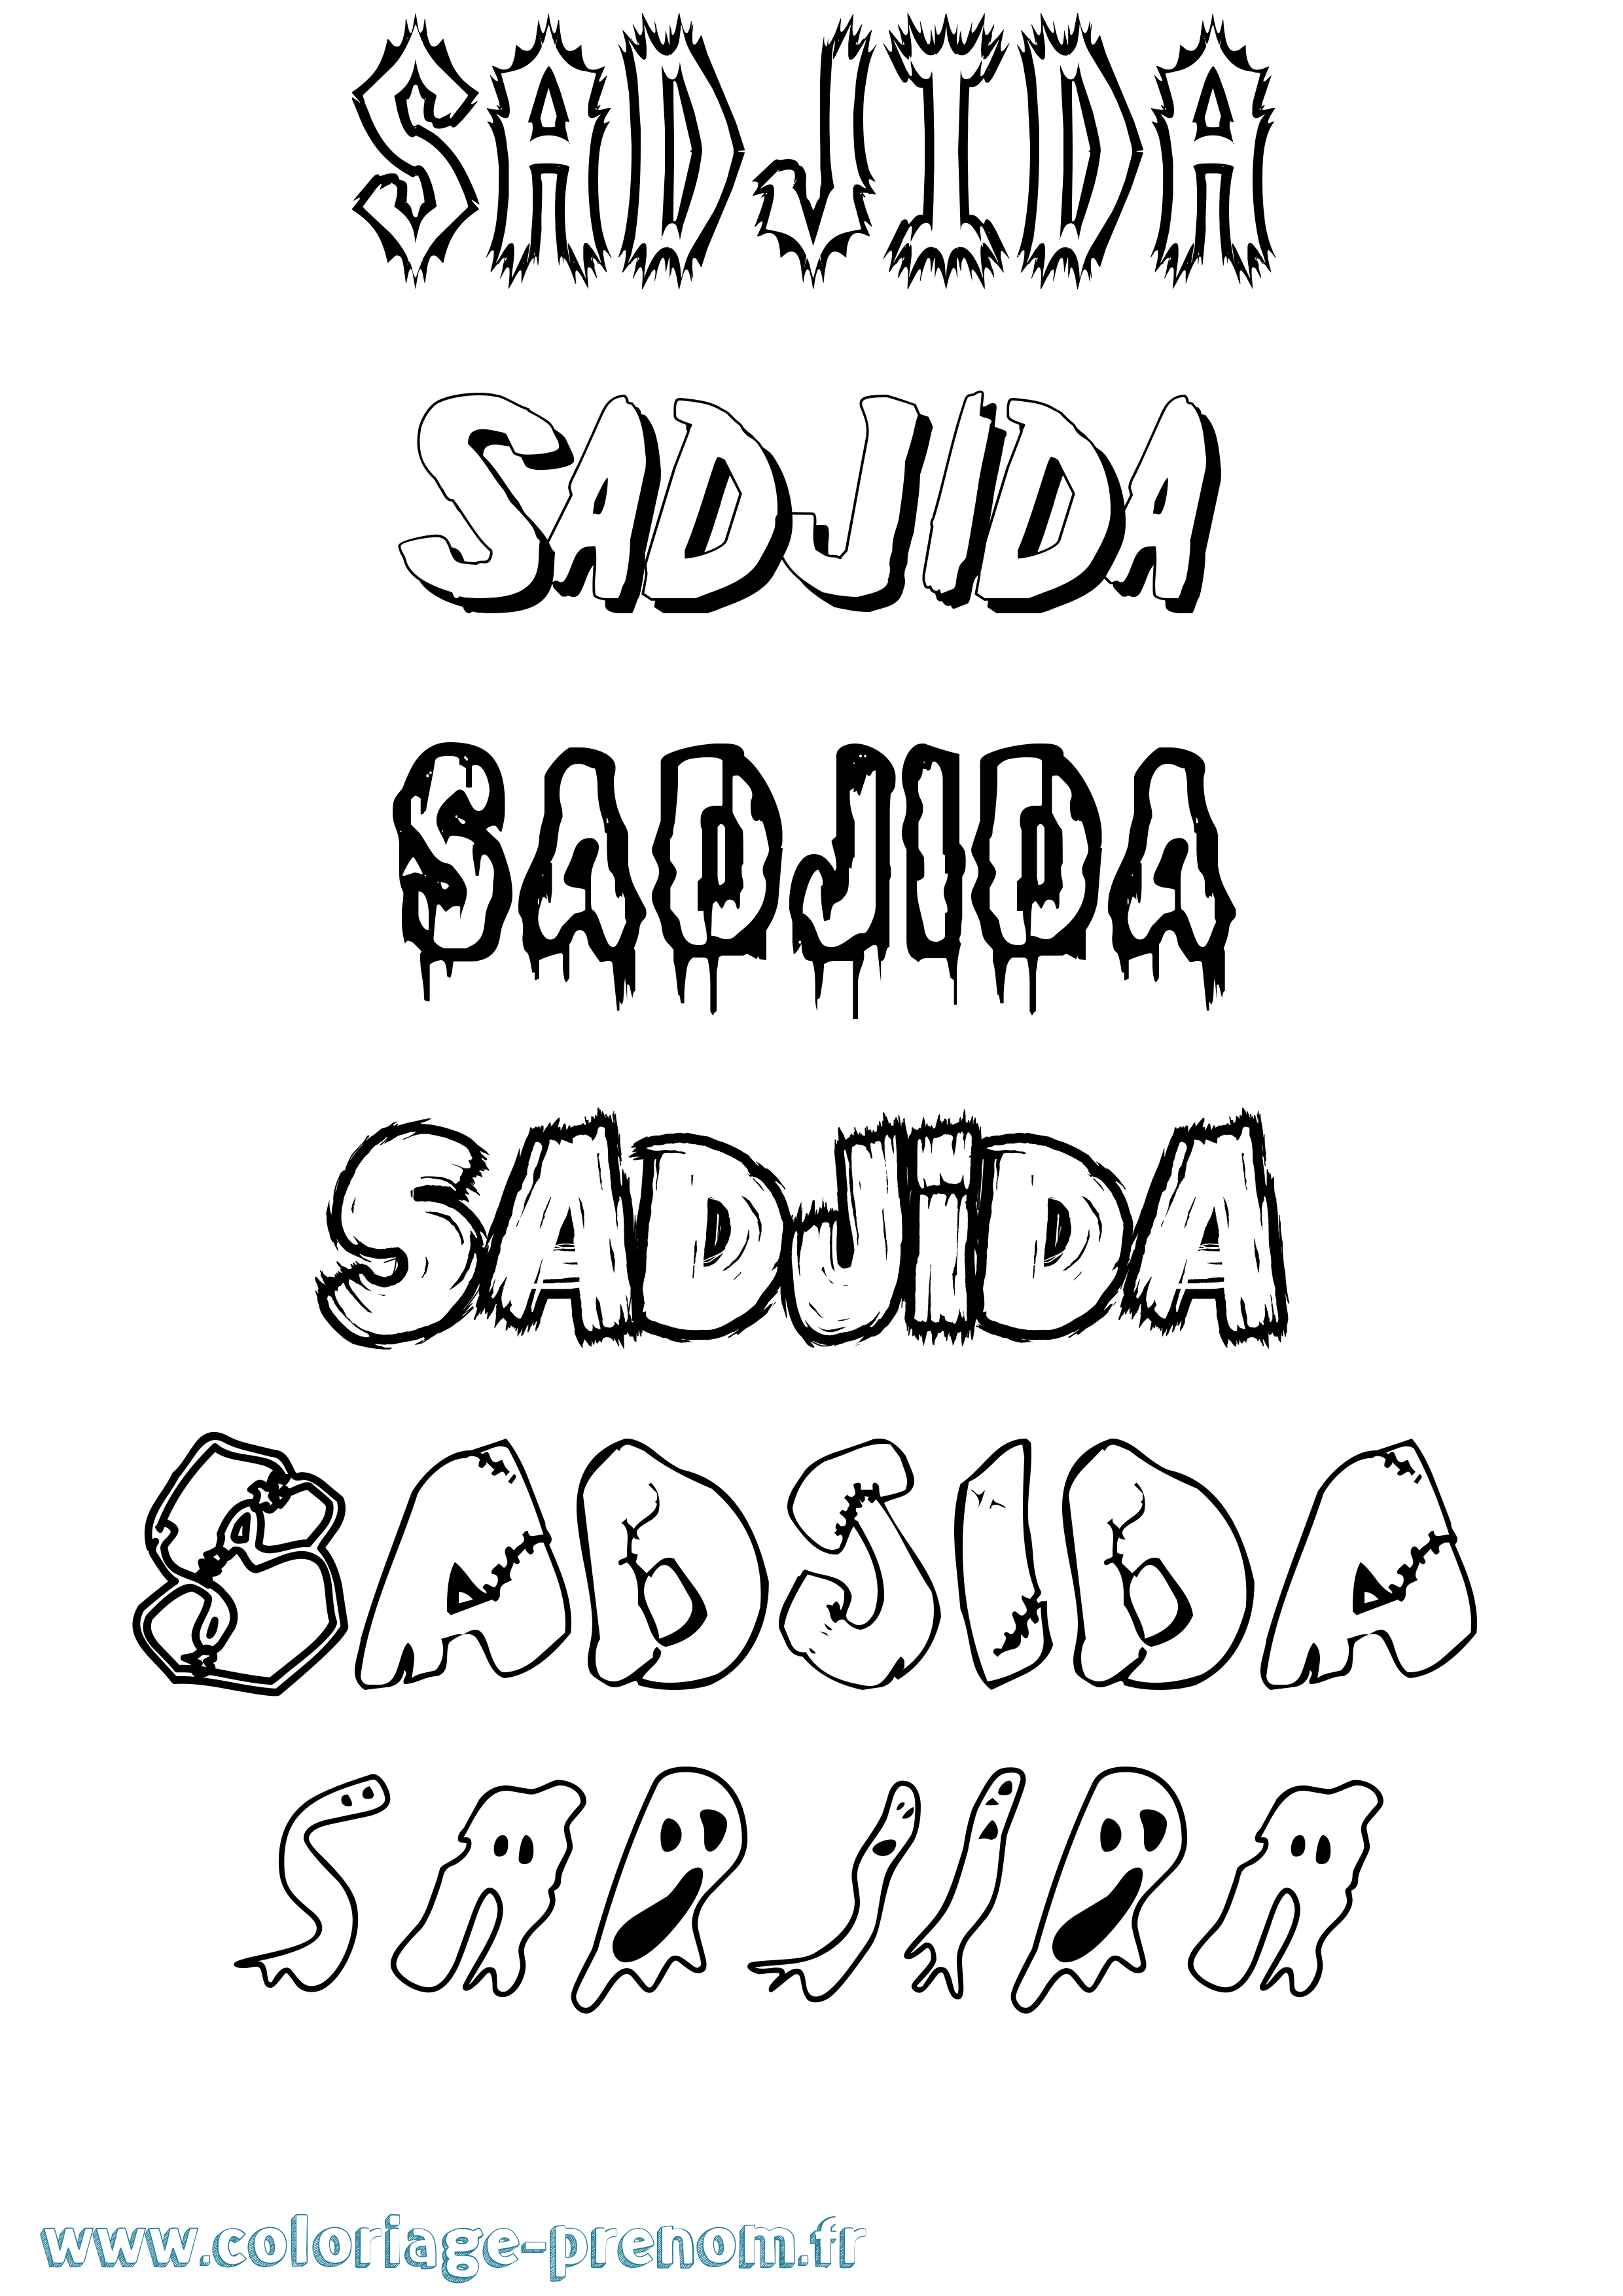 Coloriage prénom Sadjida Frisson